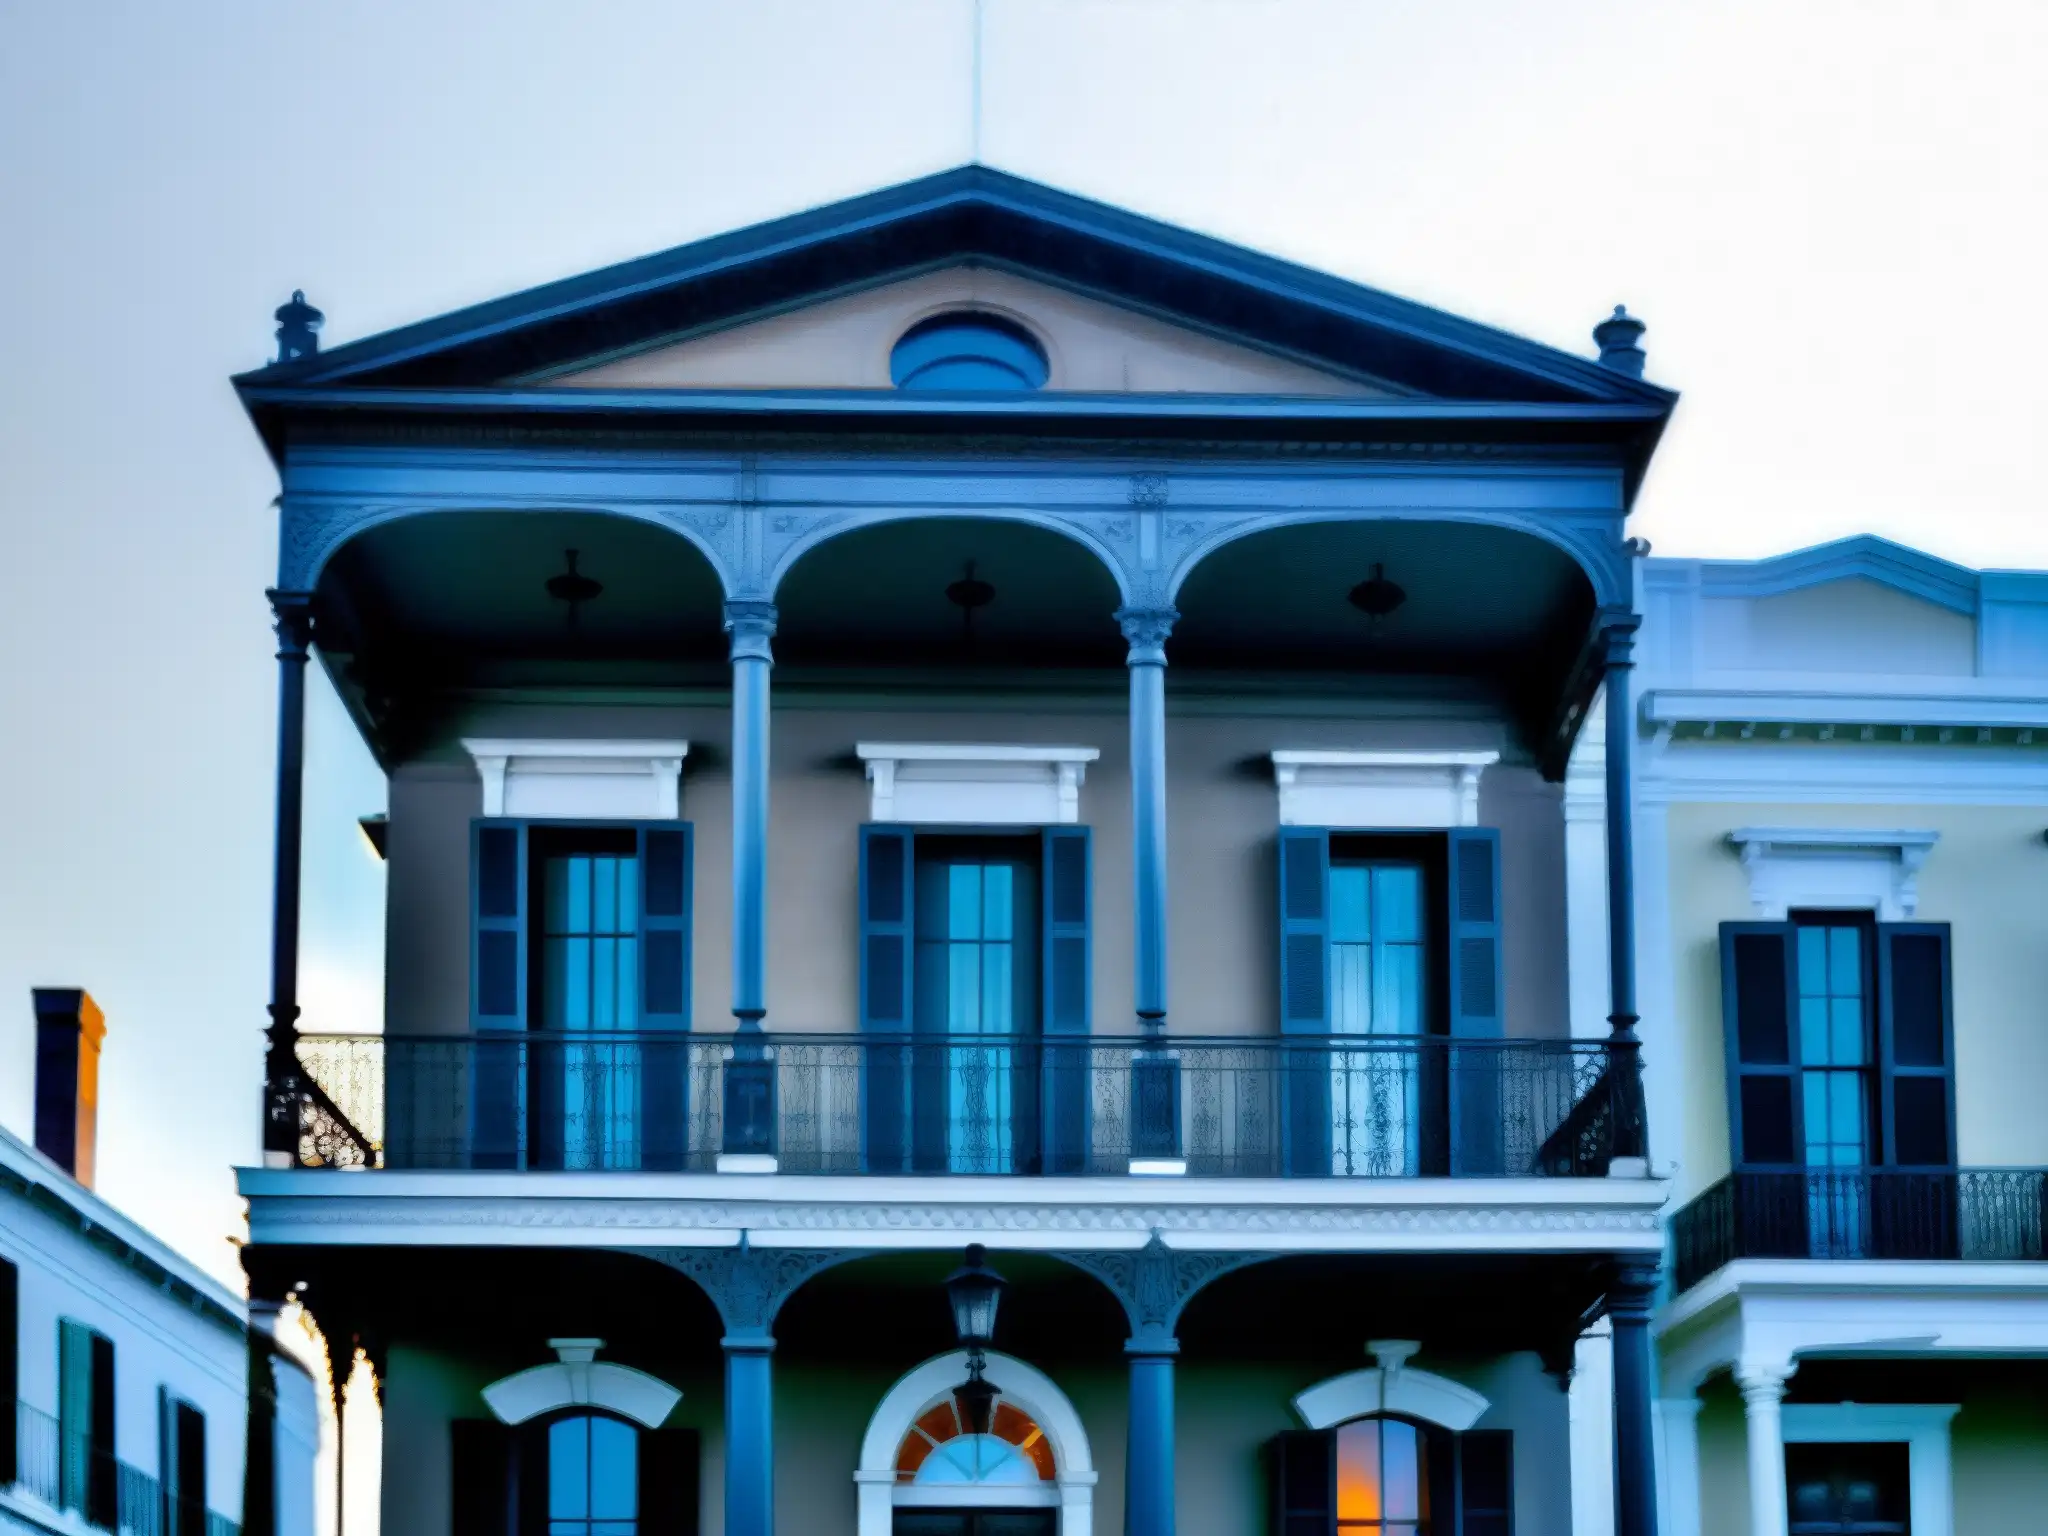 La imagen muestra la icónica Mansión LaLaurie en Nueva Orleans, con su arquitectura gótica y atmósfera misteriosa